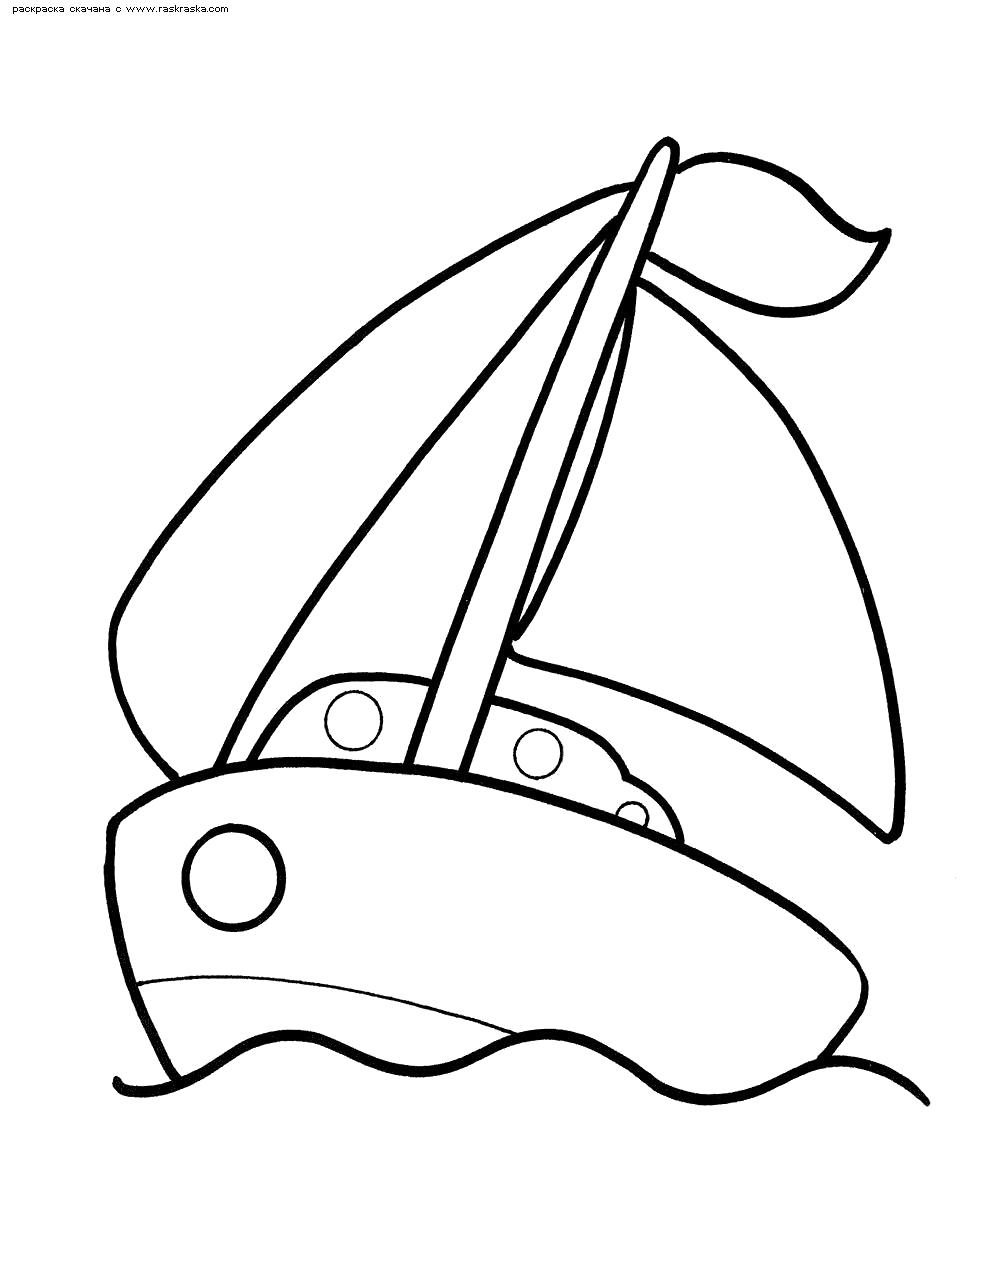 Название: Раскраска Раскраска Кораблик. Раскраска Игрушечный кораблик раскраска для детей . Категория: Кораблик. Теги: Кораблик.